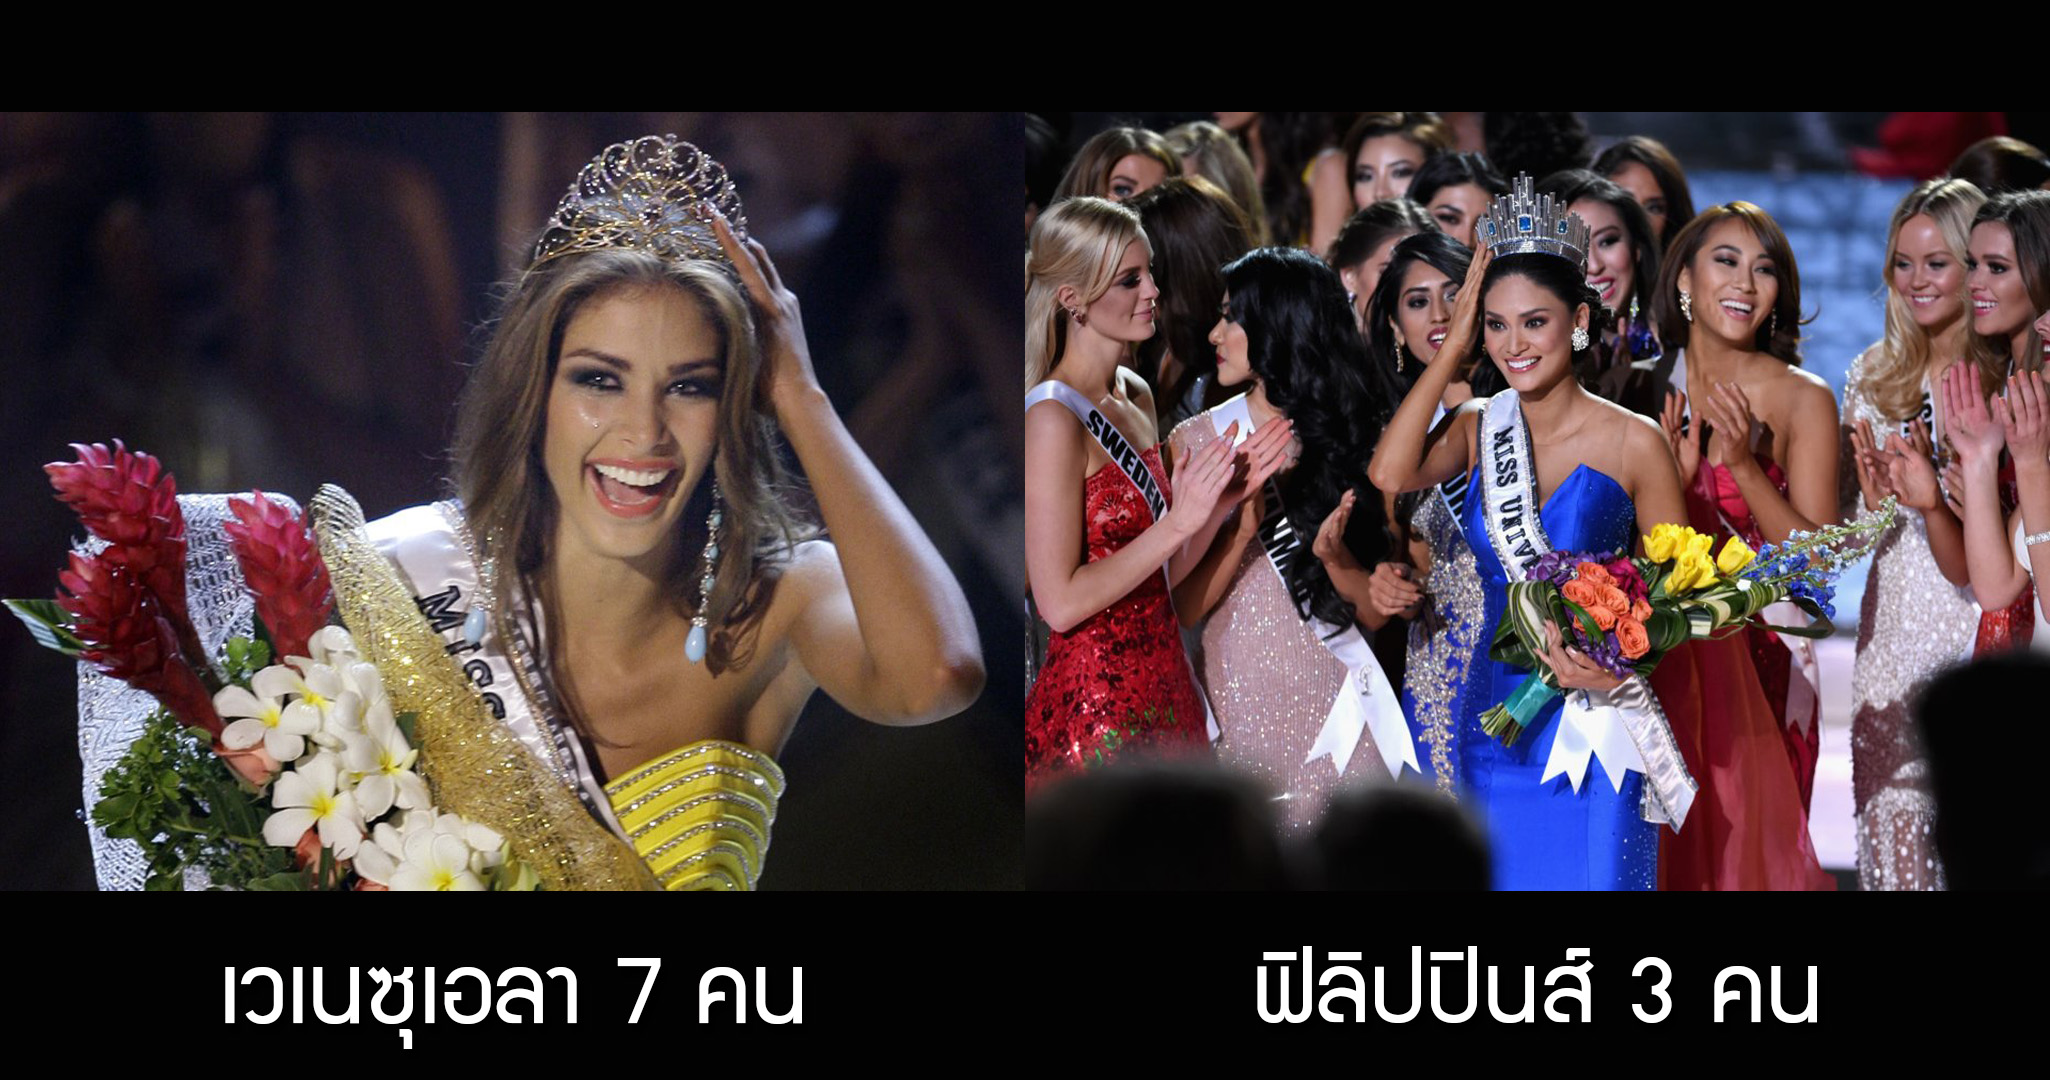 รวม 5 ประเทศแห่งคนสวย ที่คว้ามงกุฎนางงามมากที่สุดในเวที Miss Universe